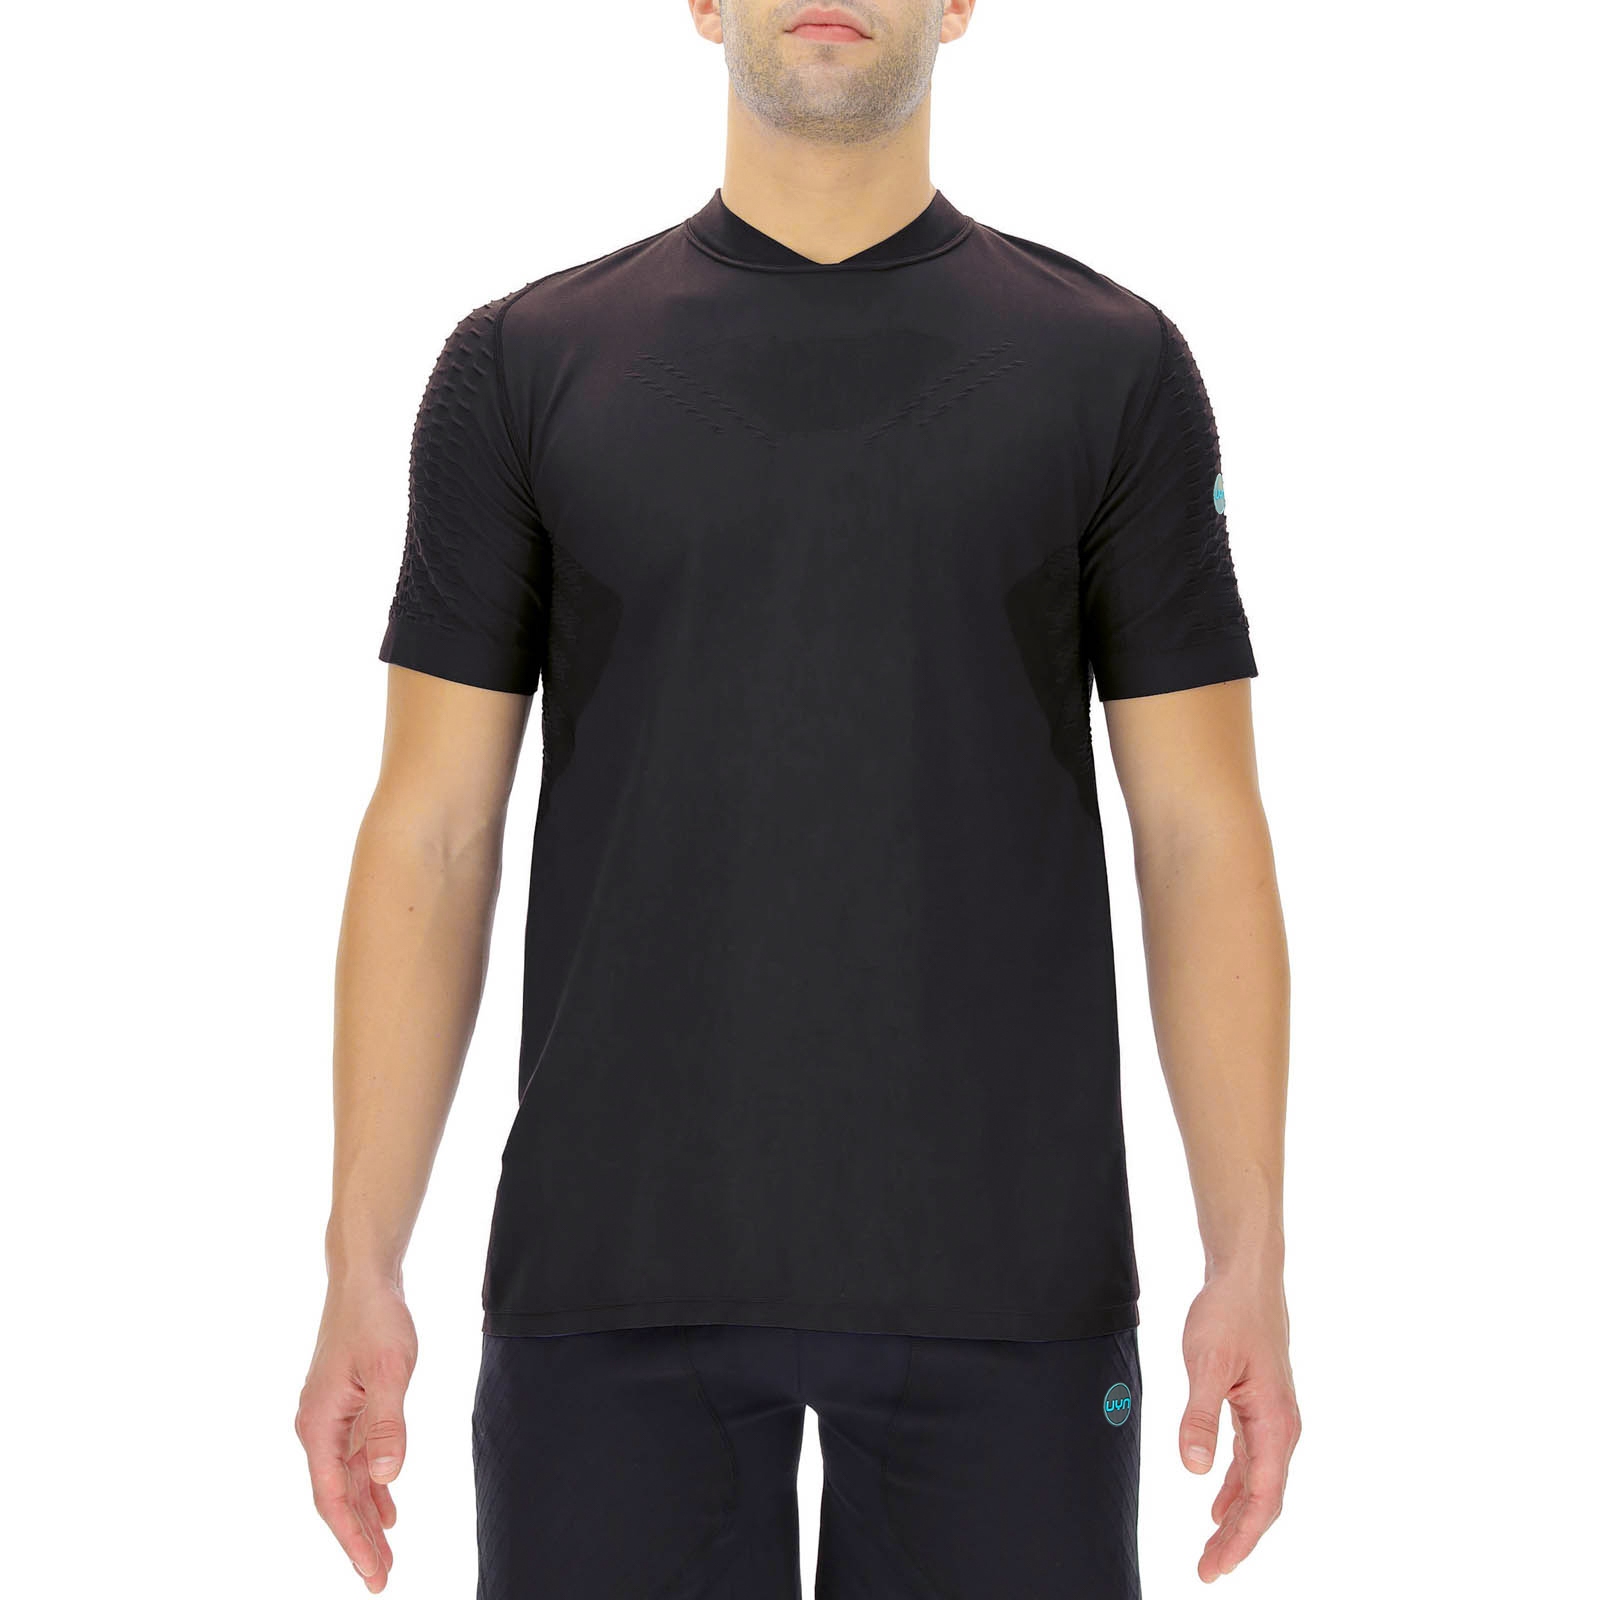 Produktbild von UYN Run Fit Kurzarmshirt Herren - Blackboard